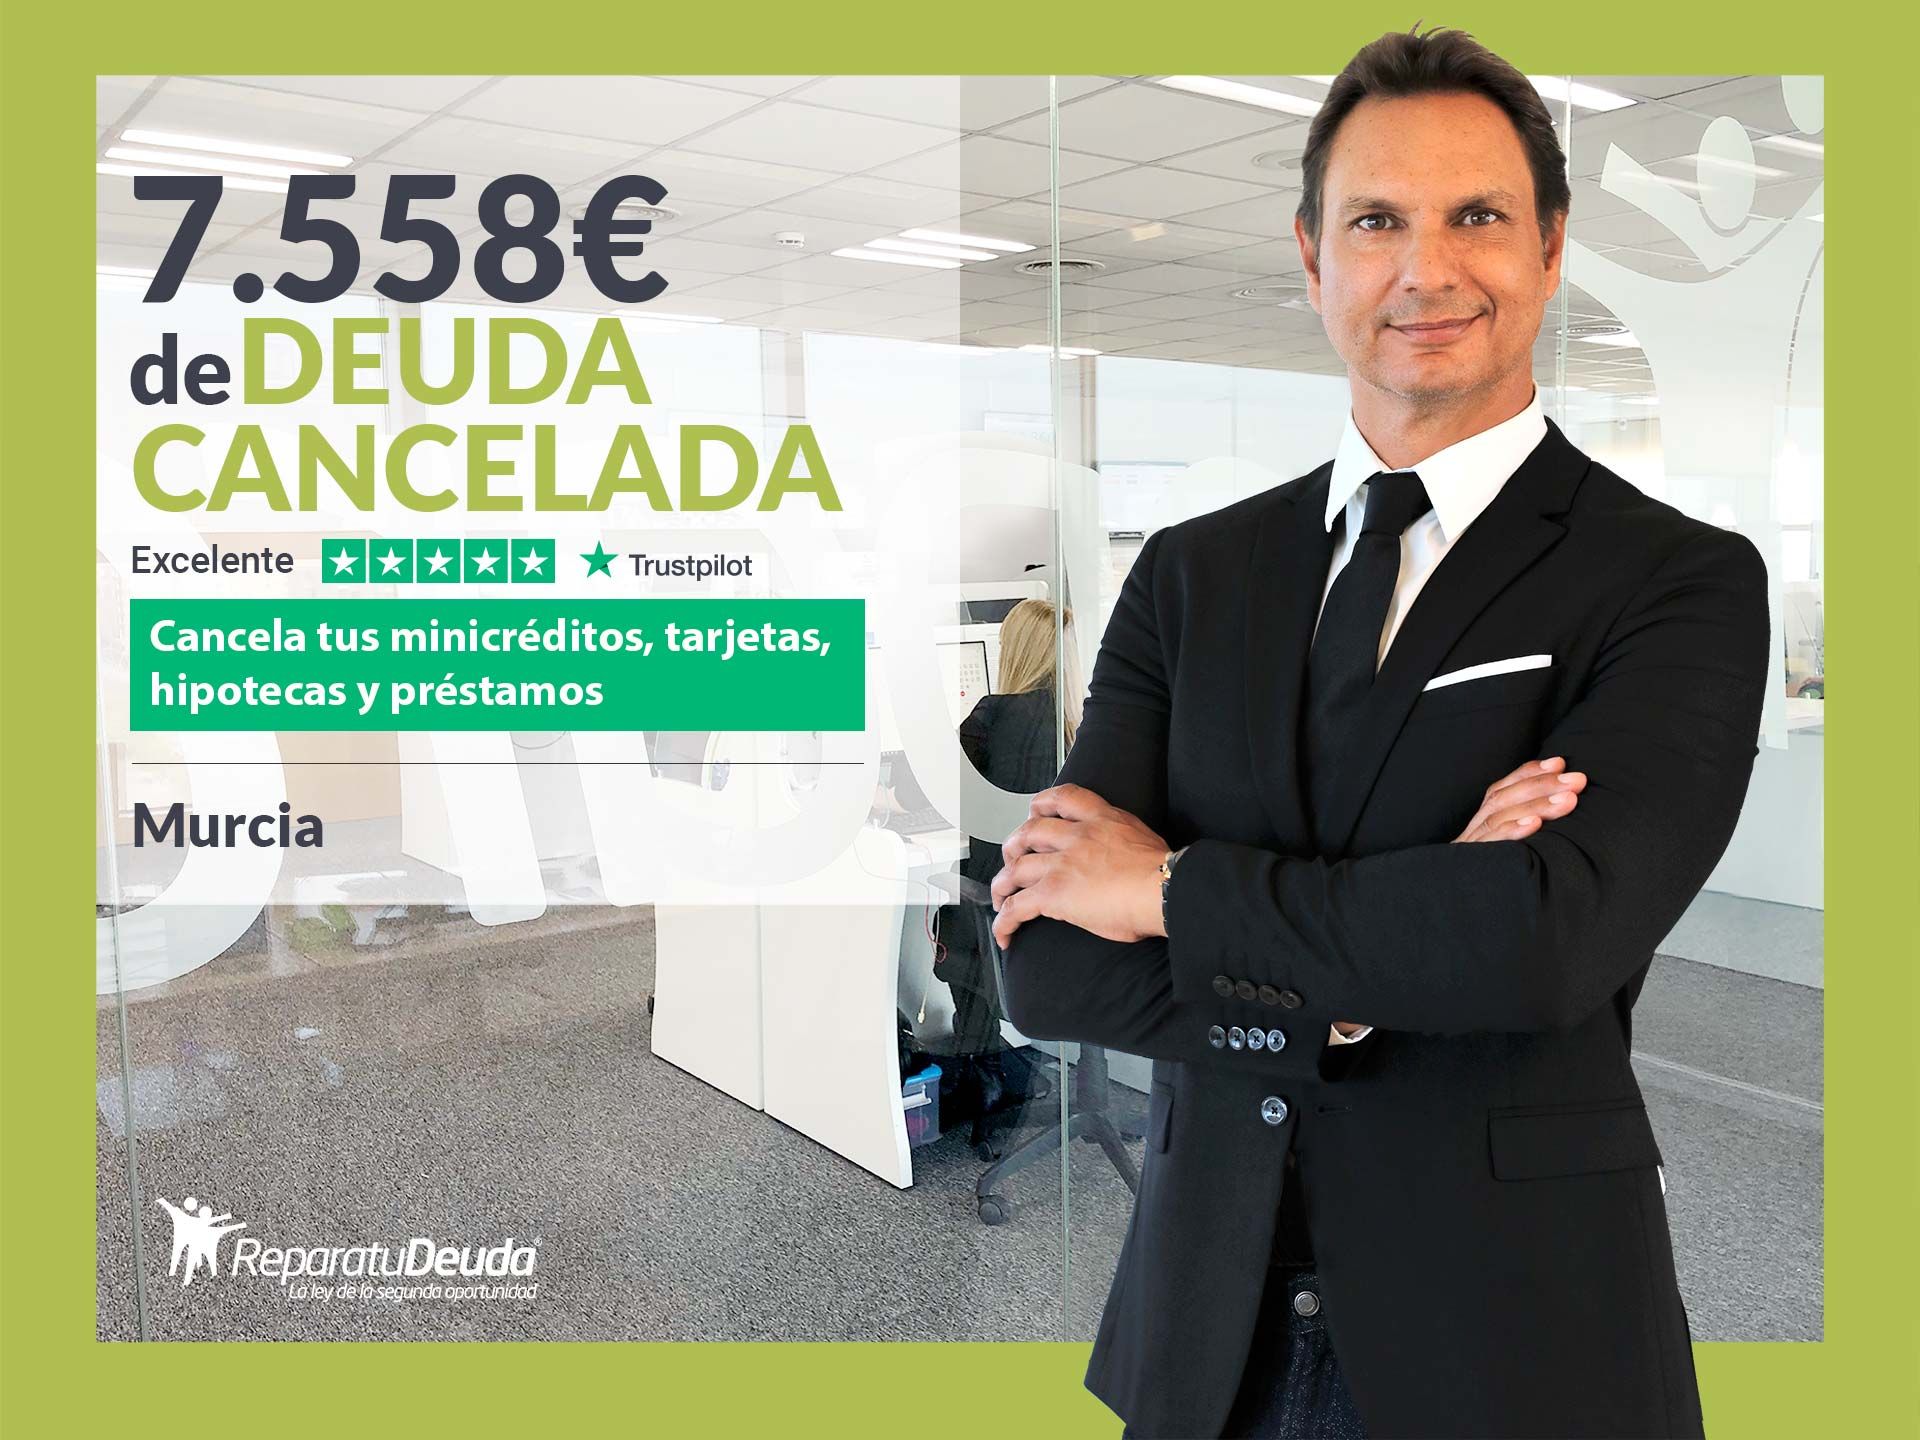 Repara tu Deuda Abogados cancela 7.558? en Murcia gracias a la Ley de Segunda Oportunidad